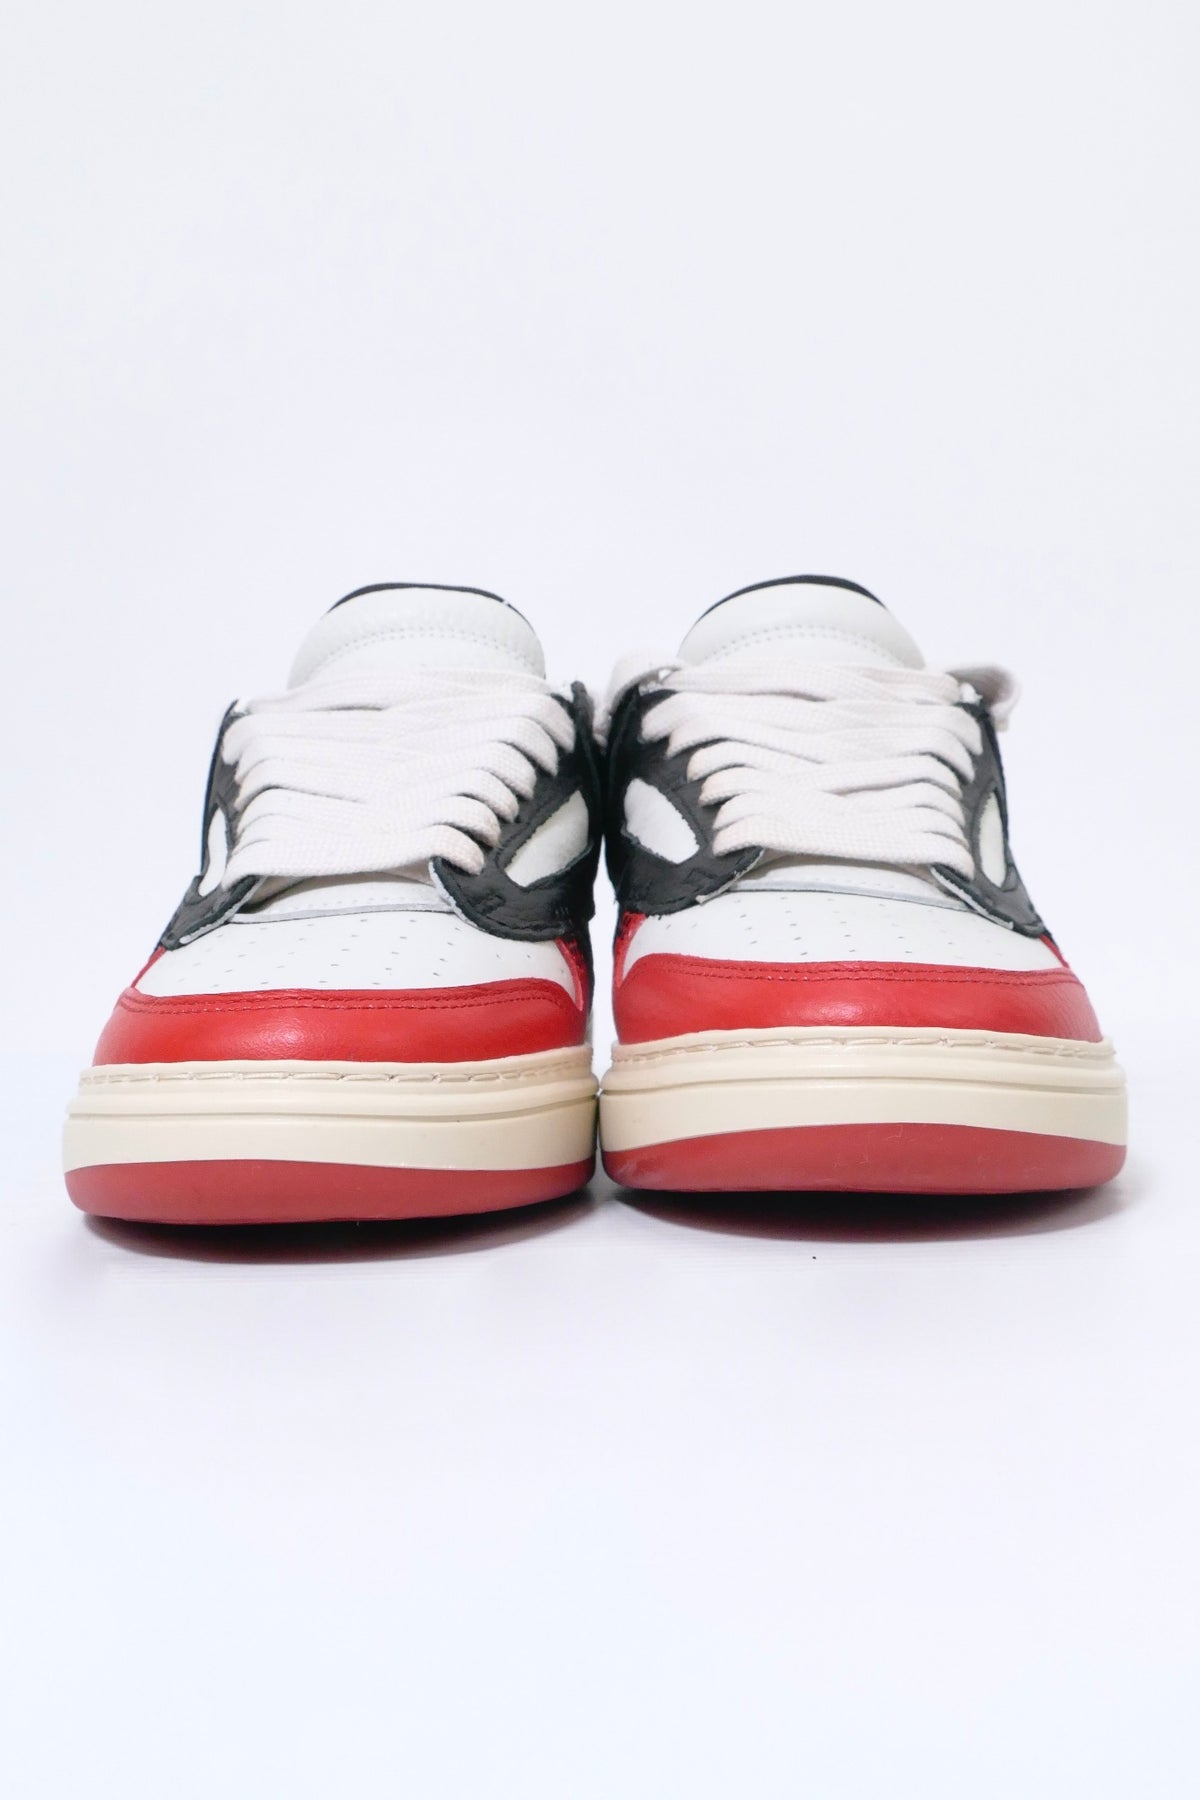 Represent Reptor Low Sneakers - Black Burnt Red